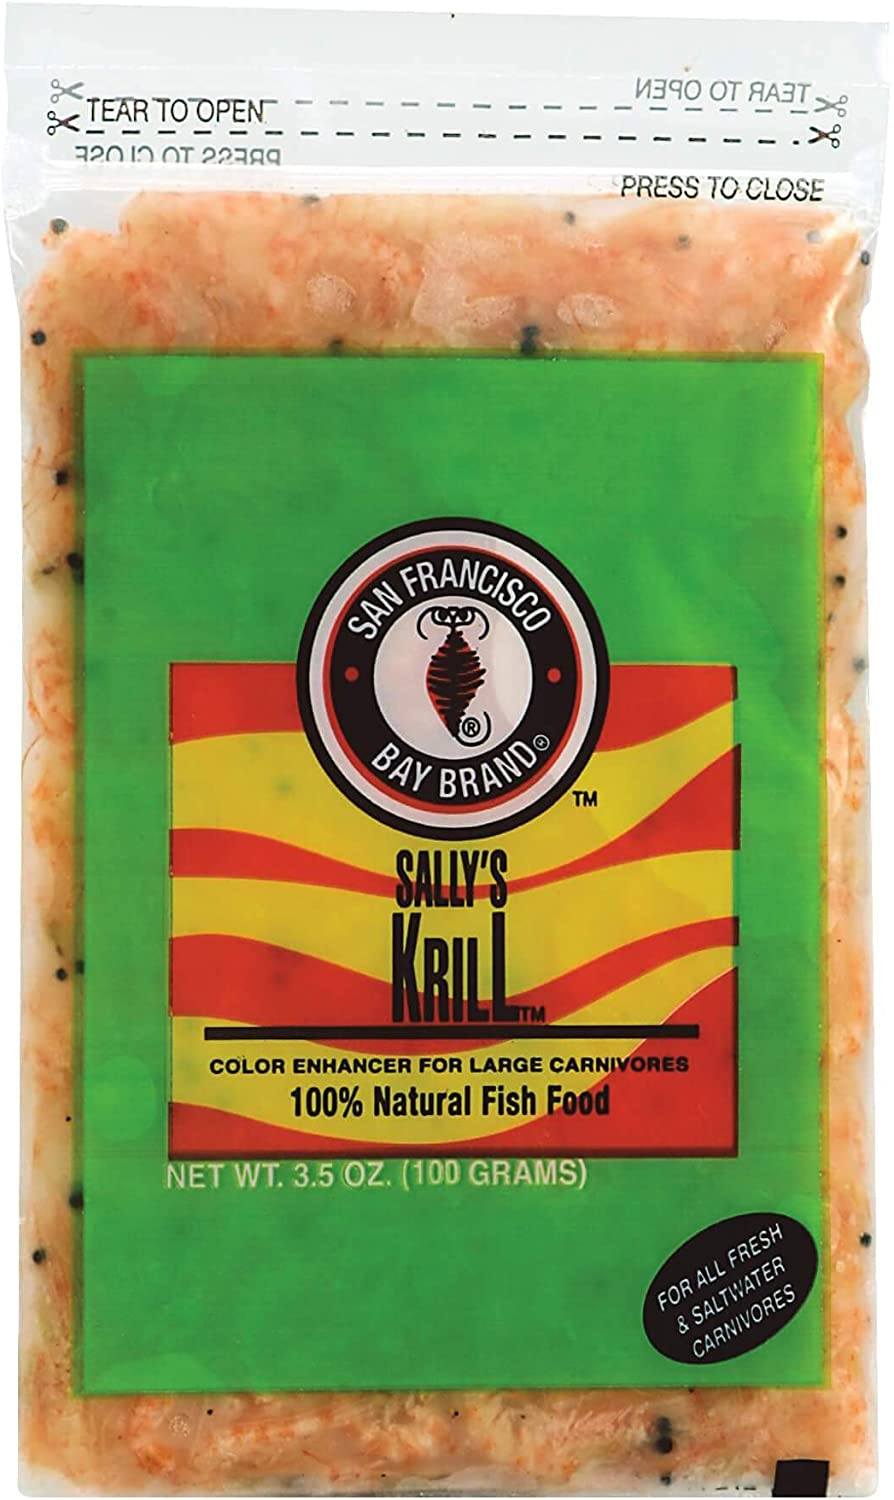 San Francisco Bay Brand Frozen Krill - 3.5 oz  